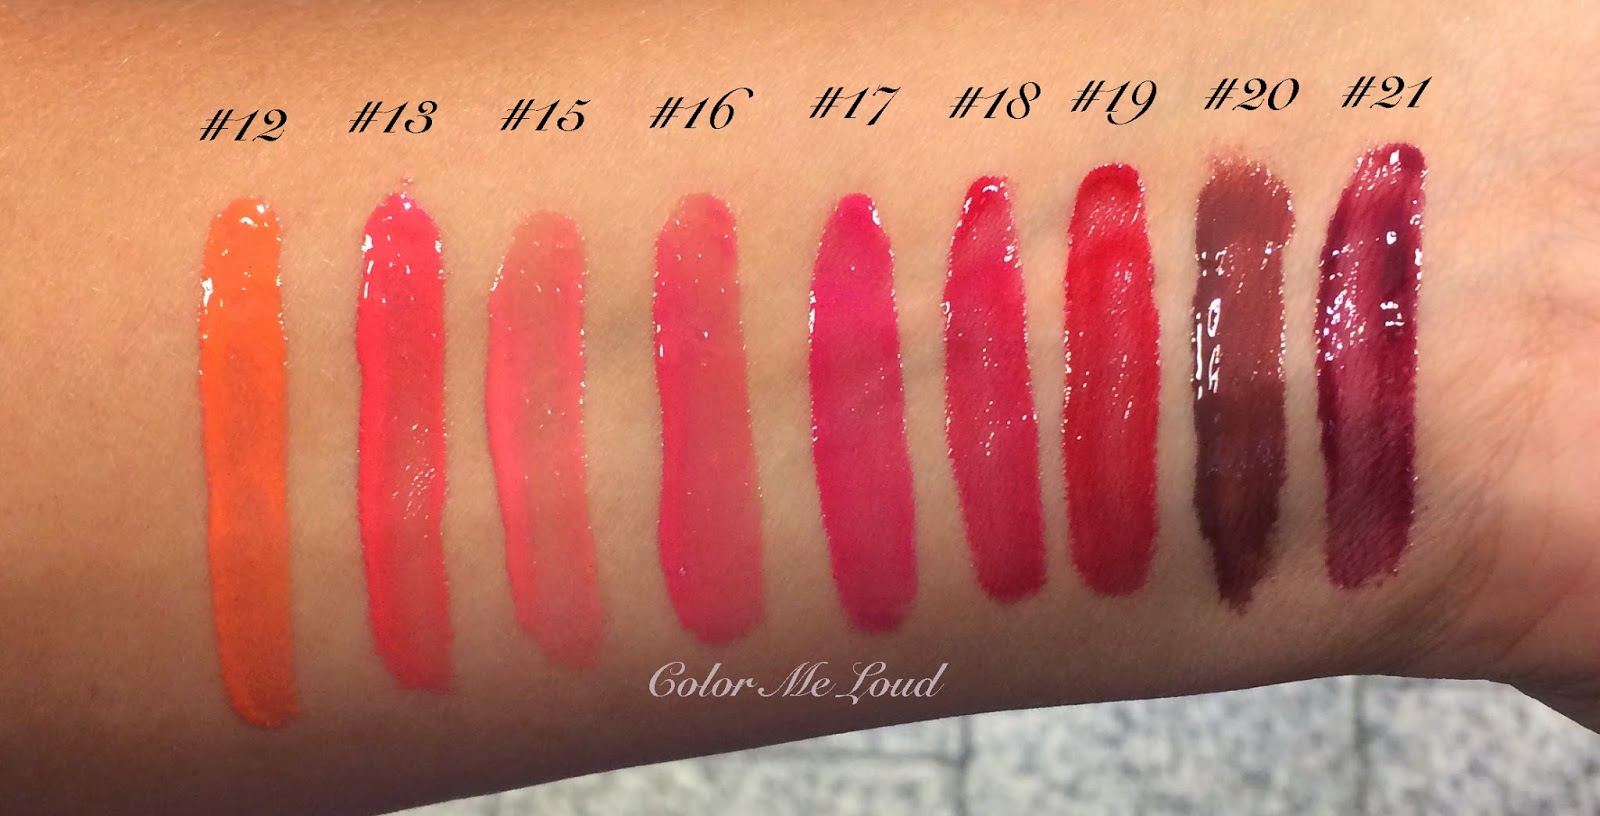 Chanel Rouge Allure Intense Long-Wear Lip Colour, Passion 104 - 0.12 oz tube